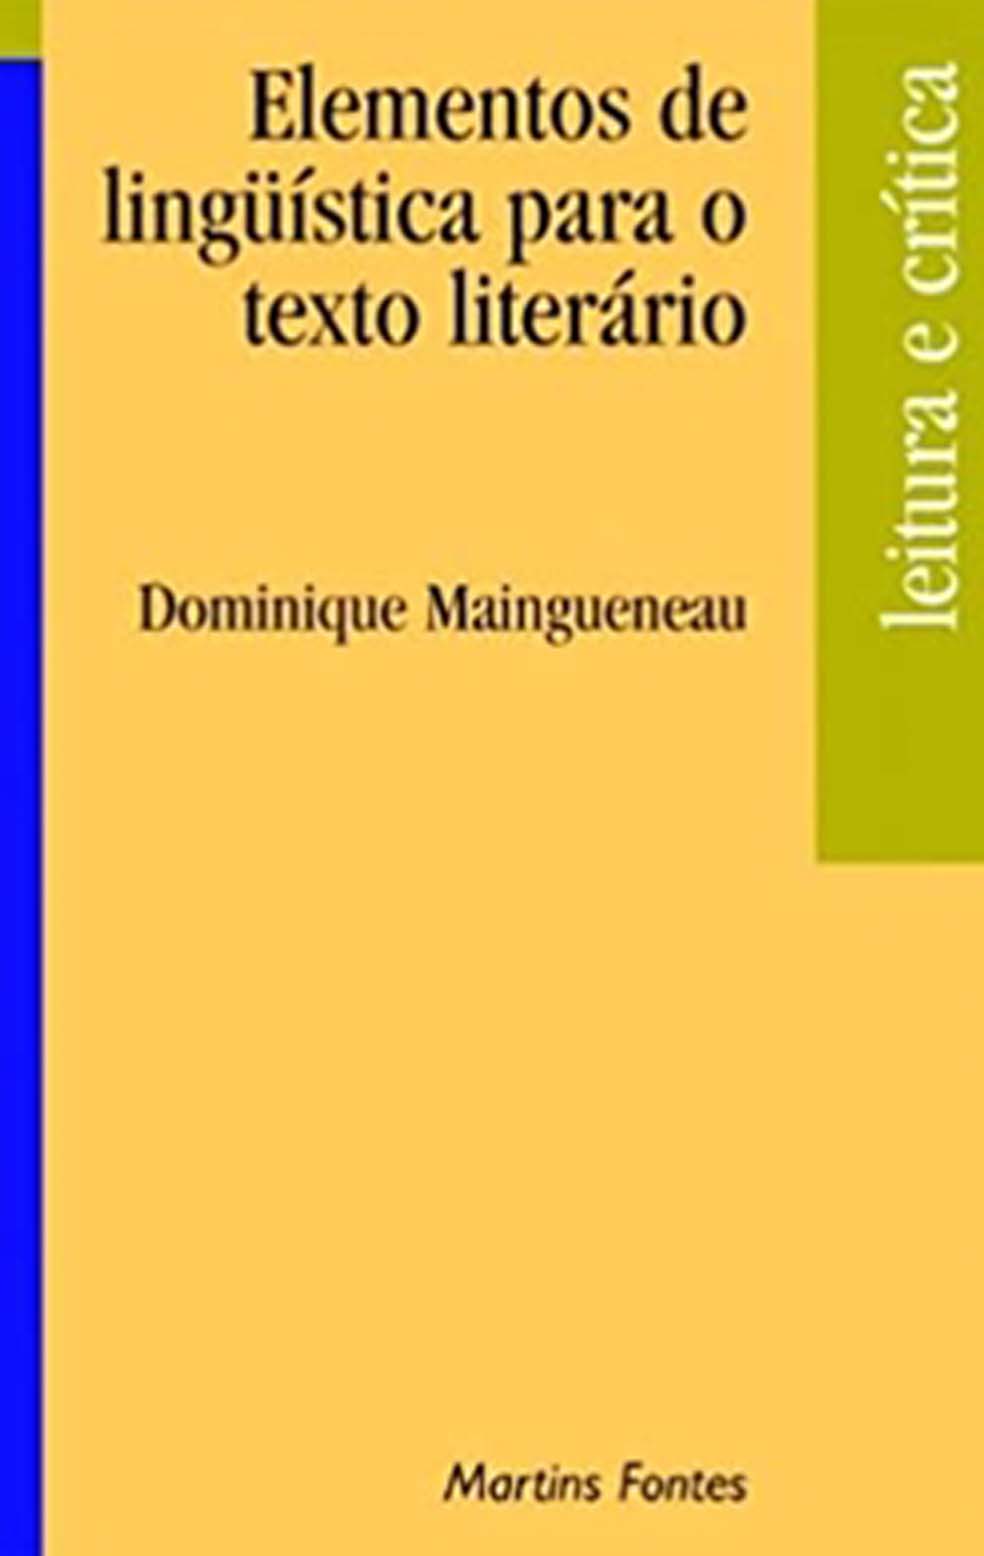 Elementos de linguística para o texto literário